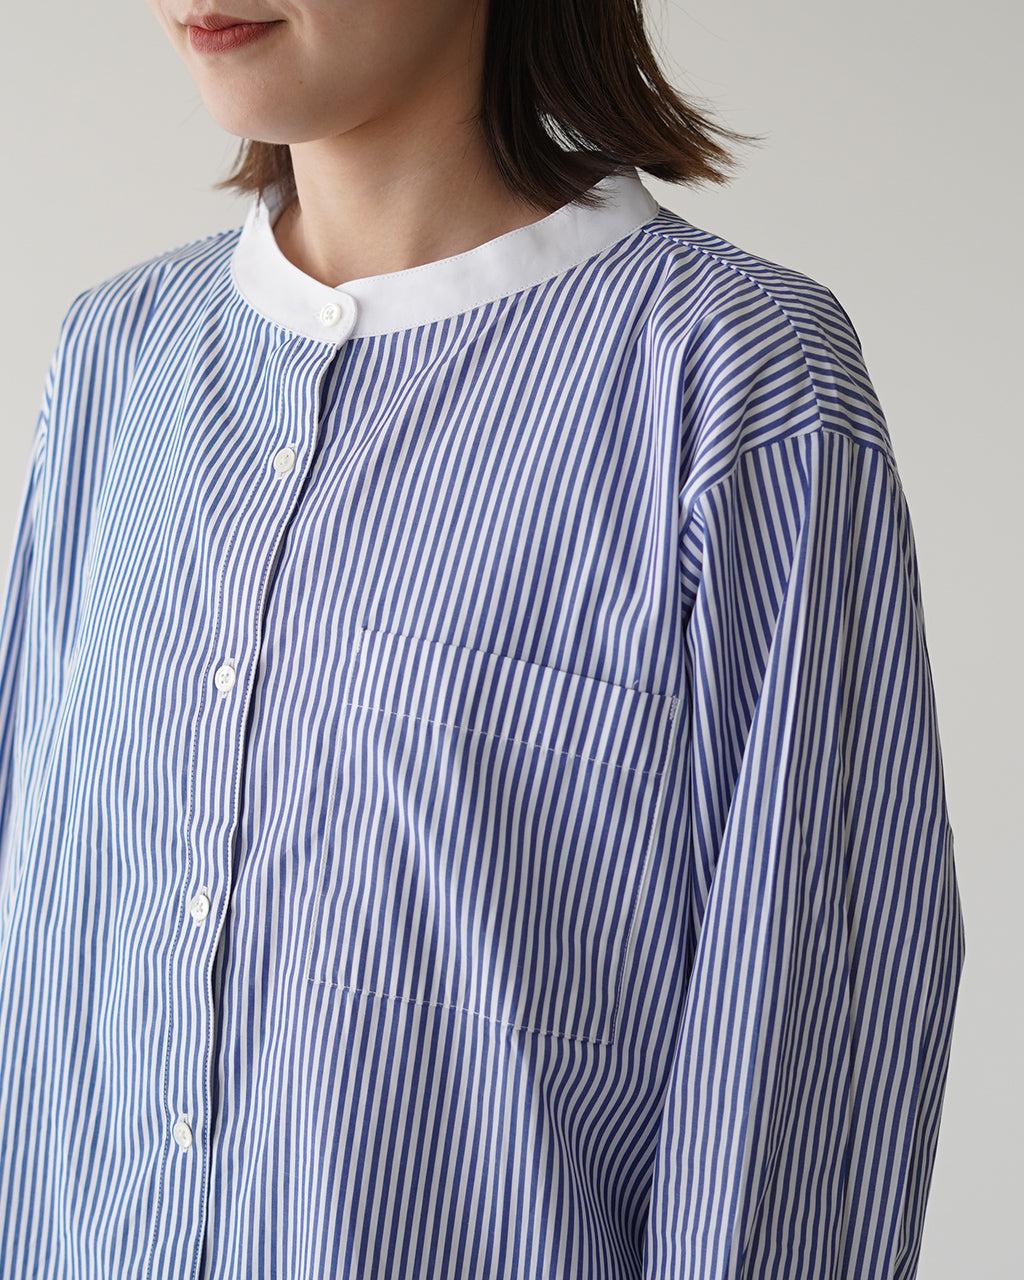 Commencement コメンスメント ストライプシャツ Stripe shirt  バンドカラー レディース C-211【送料無料】